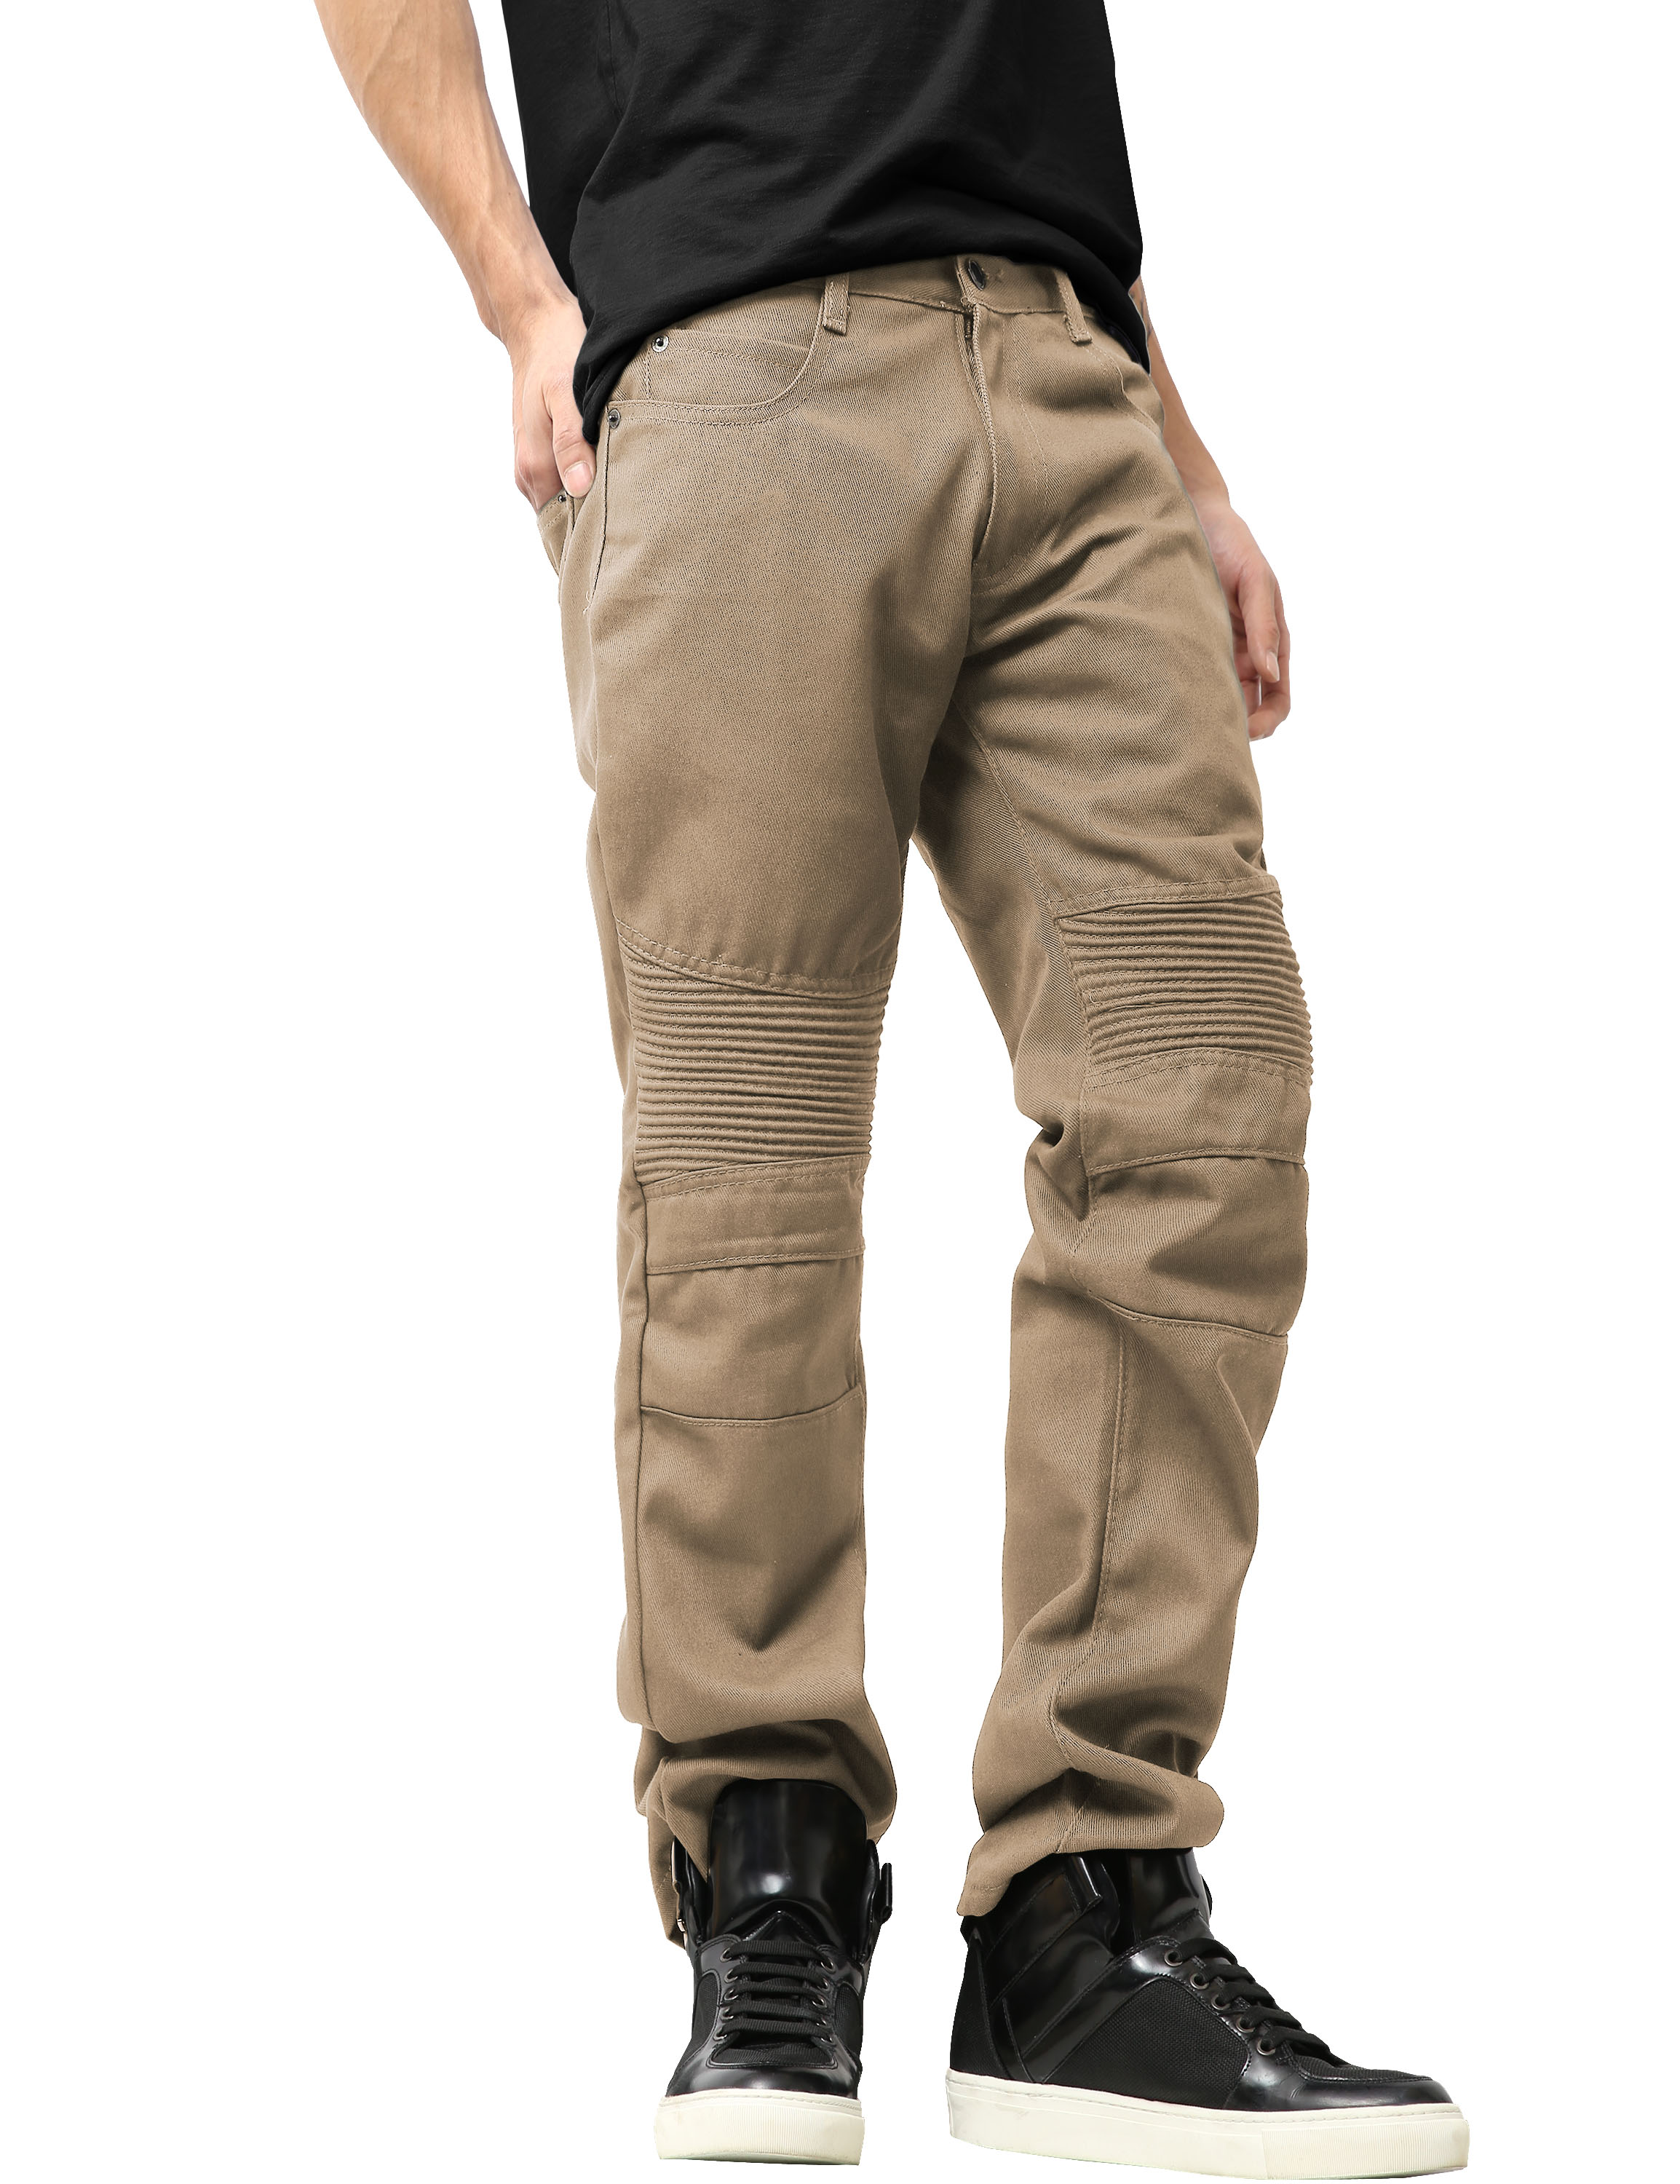 Ma Croix Mens Biker Jeans Slim Straight Fit Denim Distressed Zipper Pants - image 3 of 7